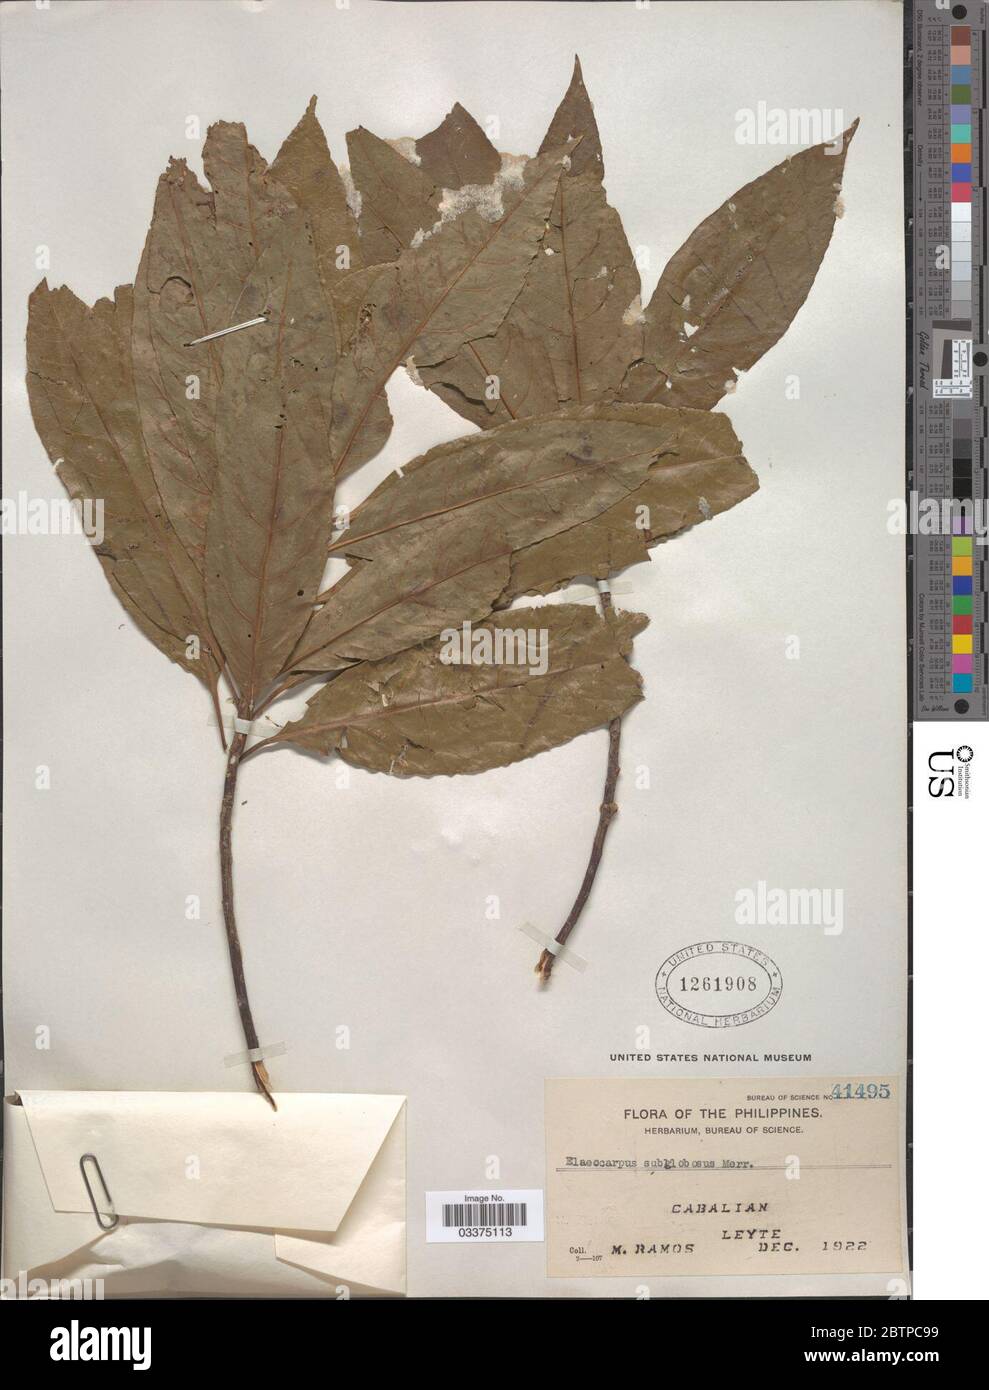 Elaeocarpus sphaericus Gaertn K Schum. Stock Photo